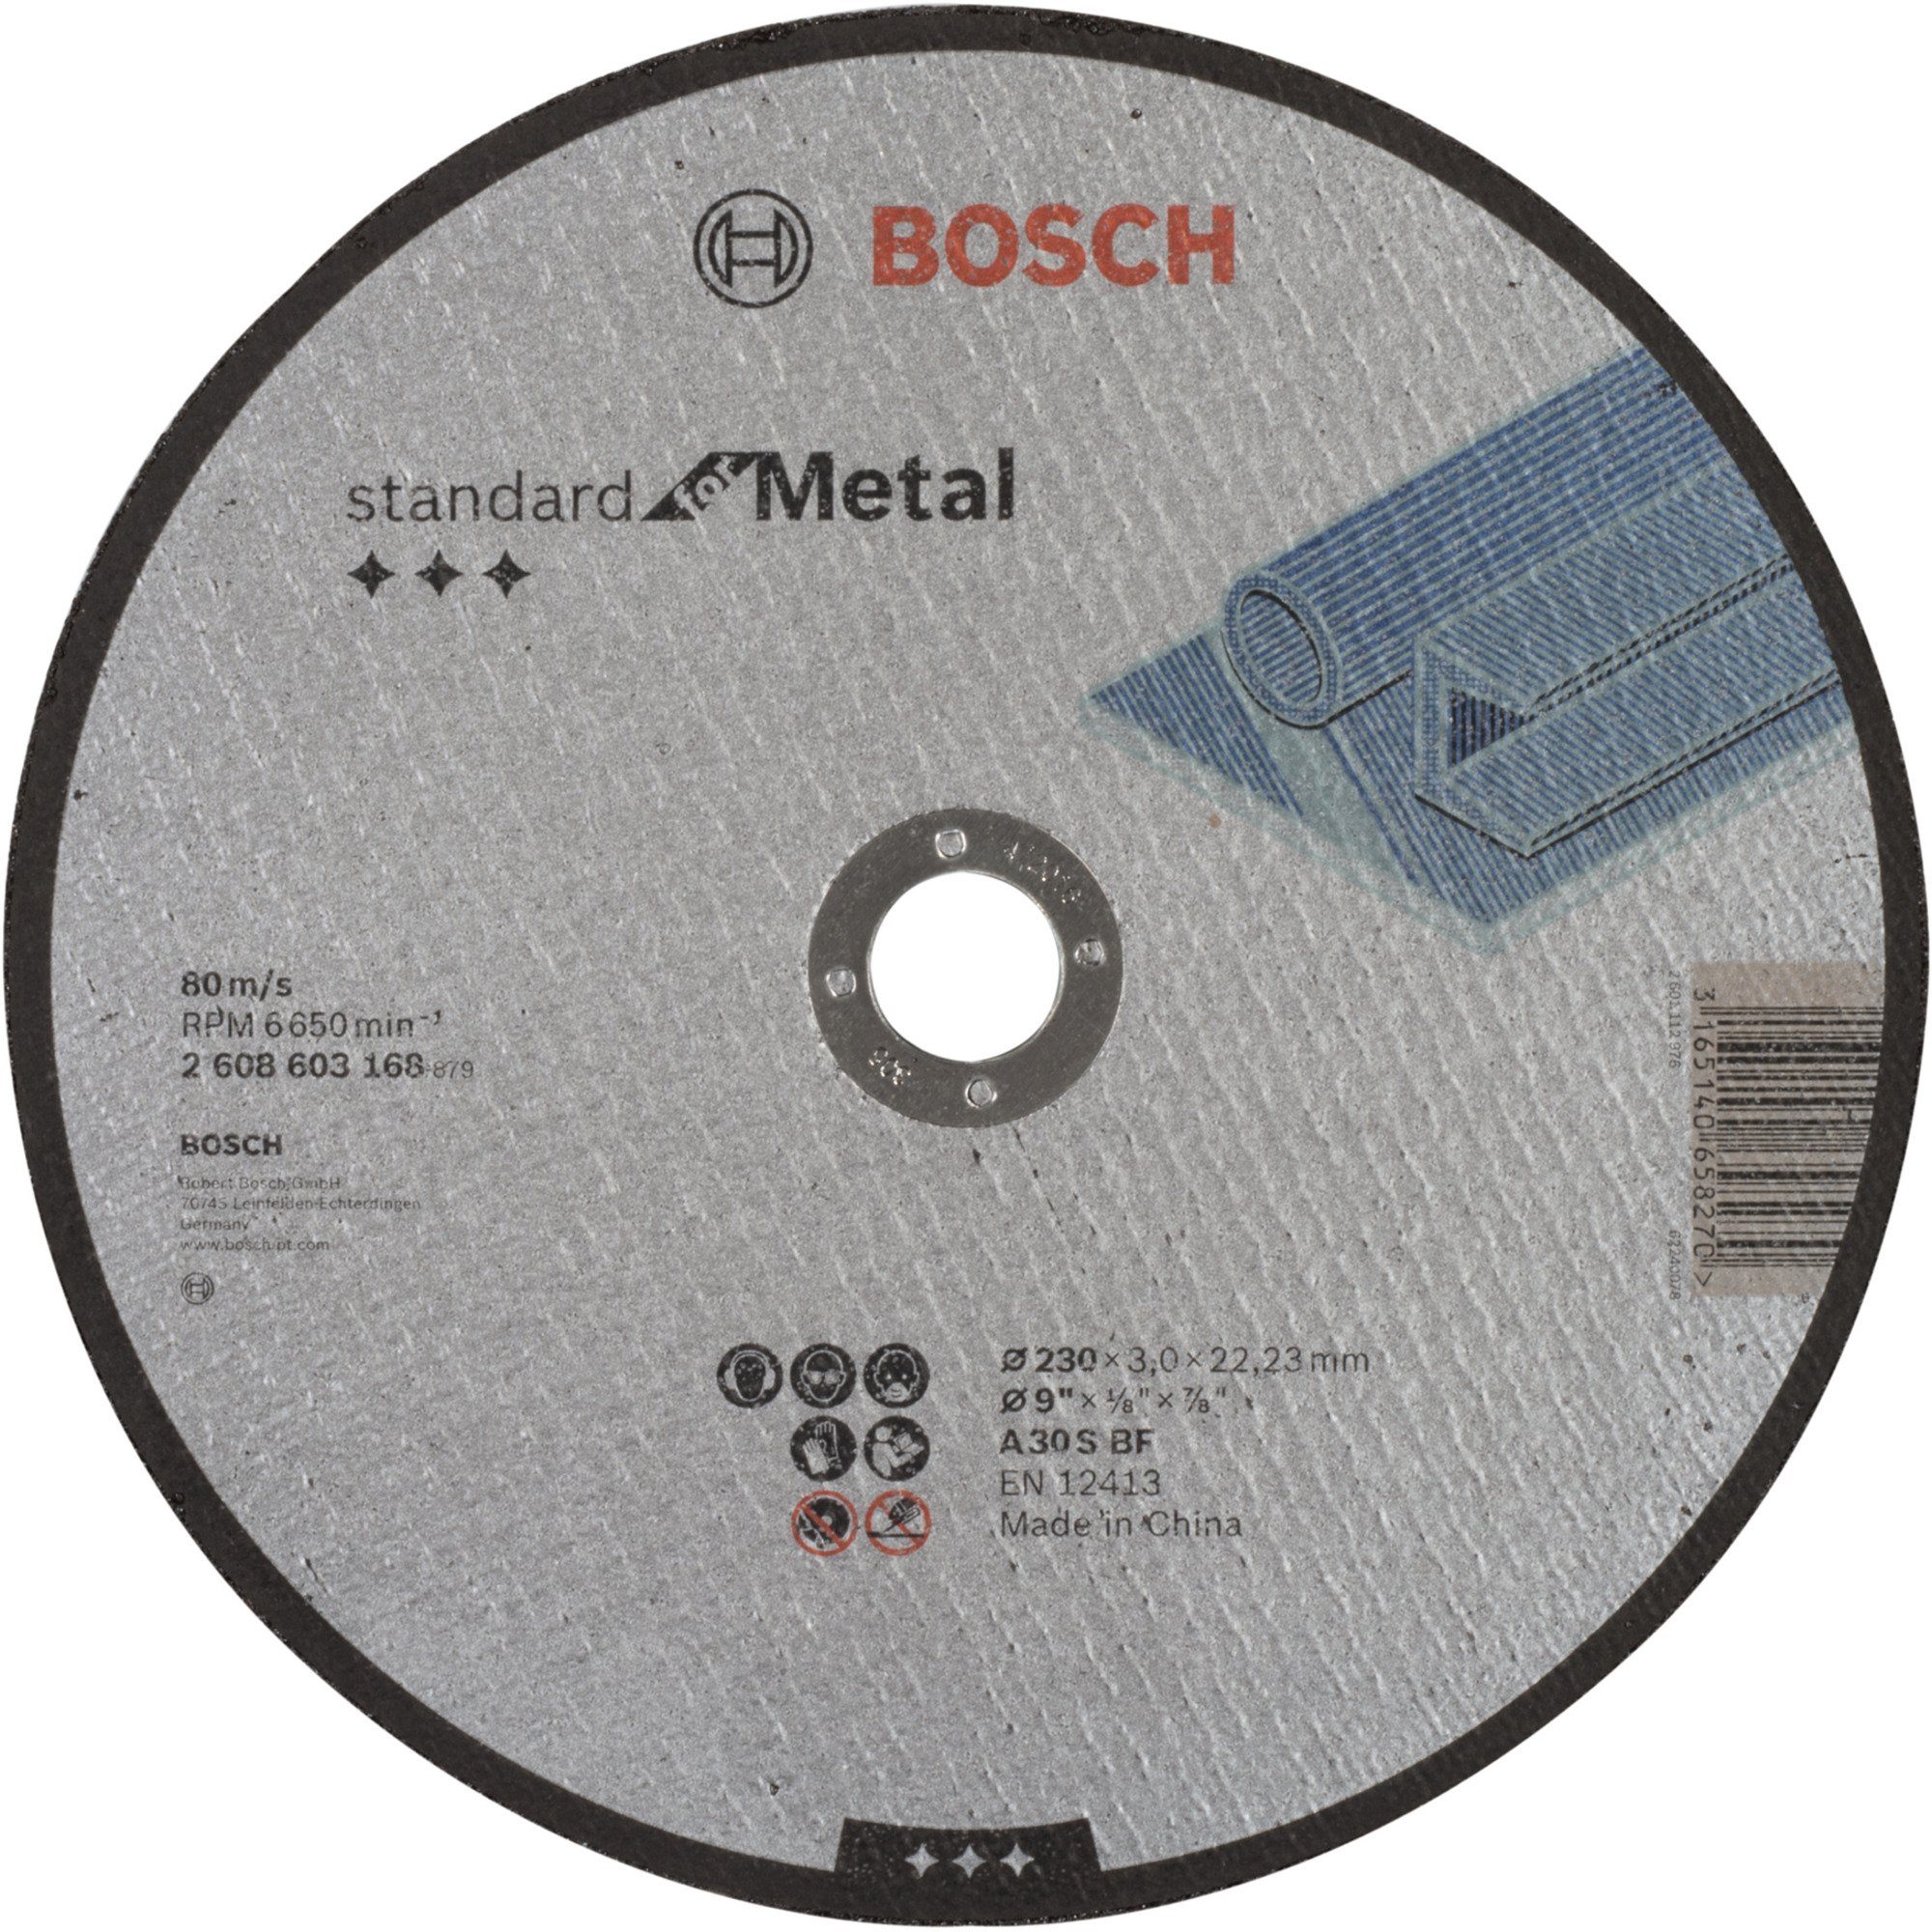 BOSCH Trennscheibe Trennscheibe Standard for Metal, Ø 230mm